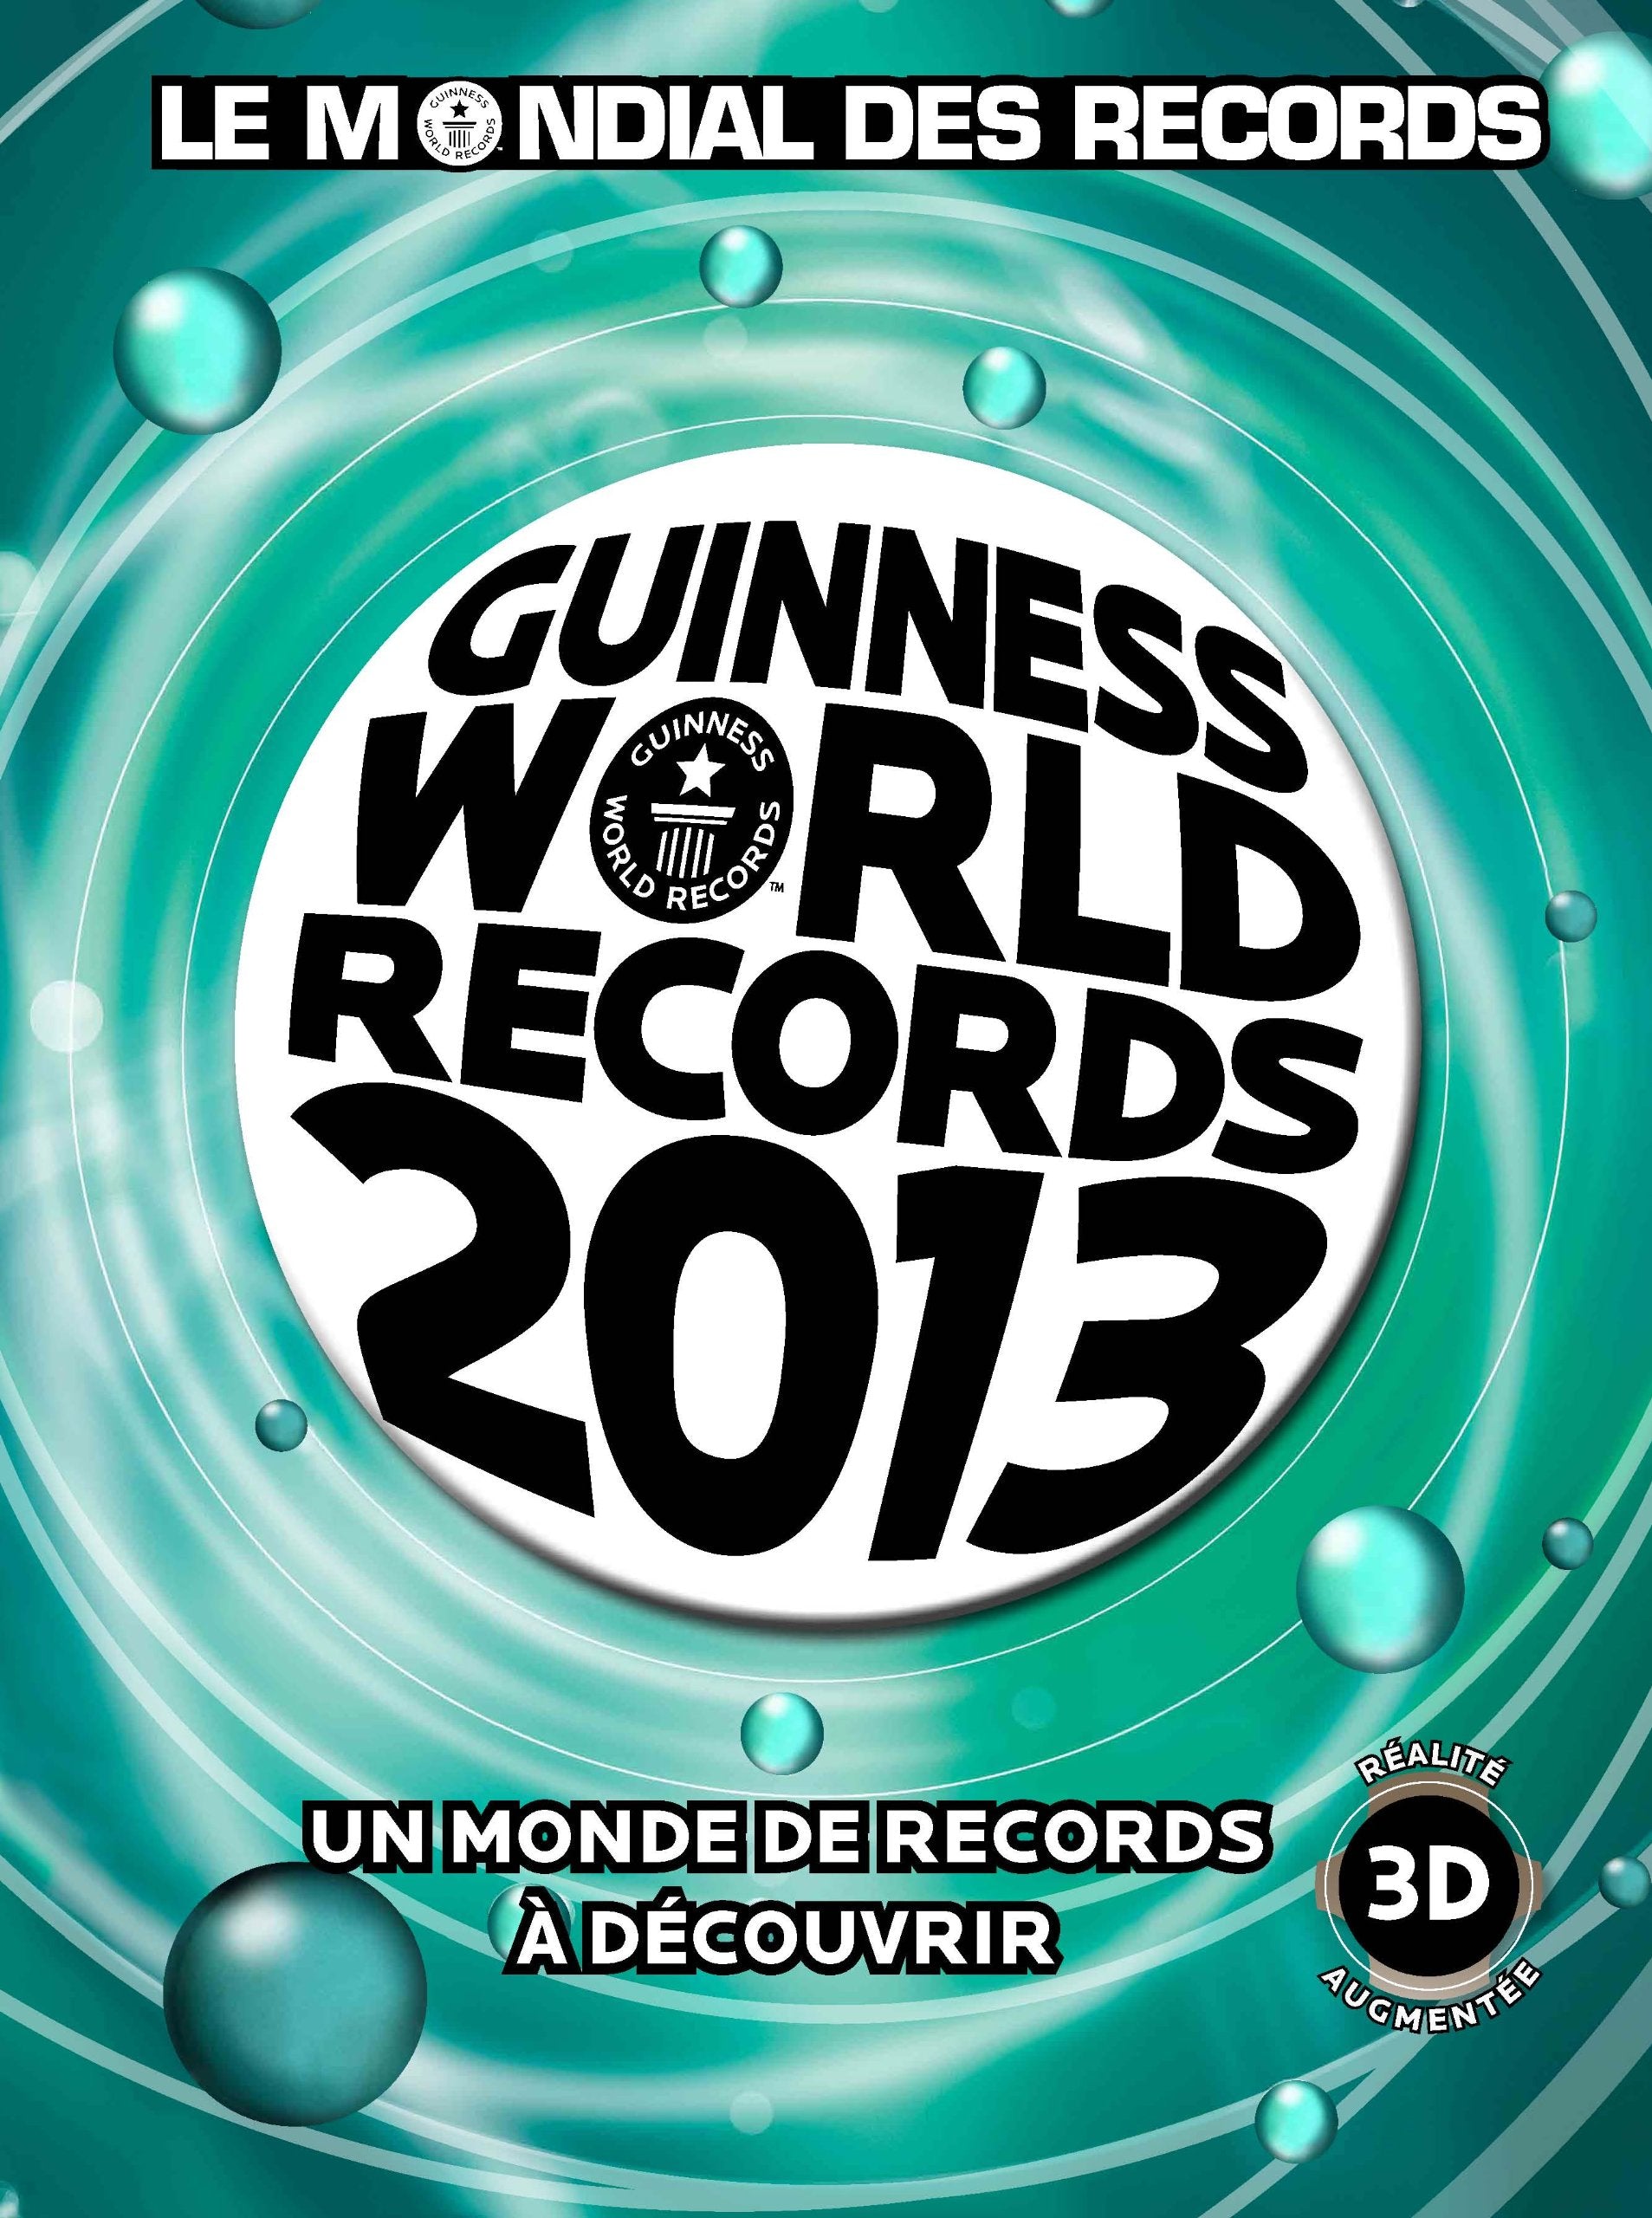 Le Mondial des Records Guinness 2013